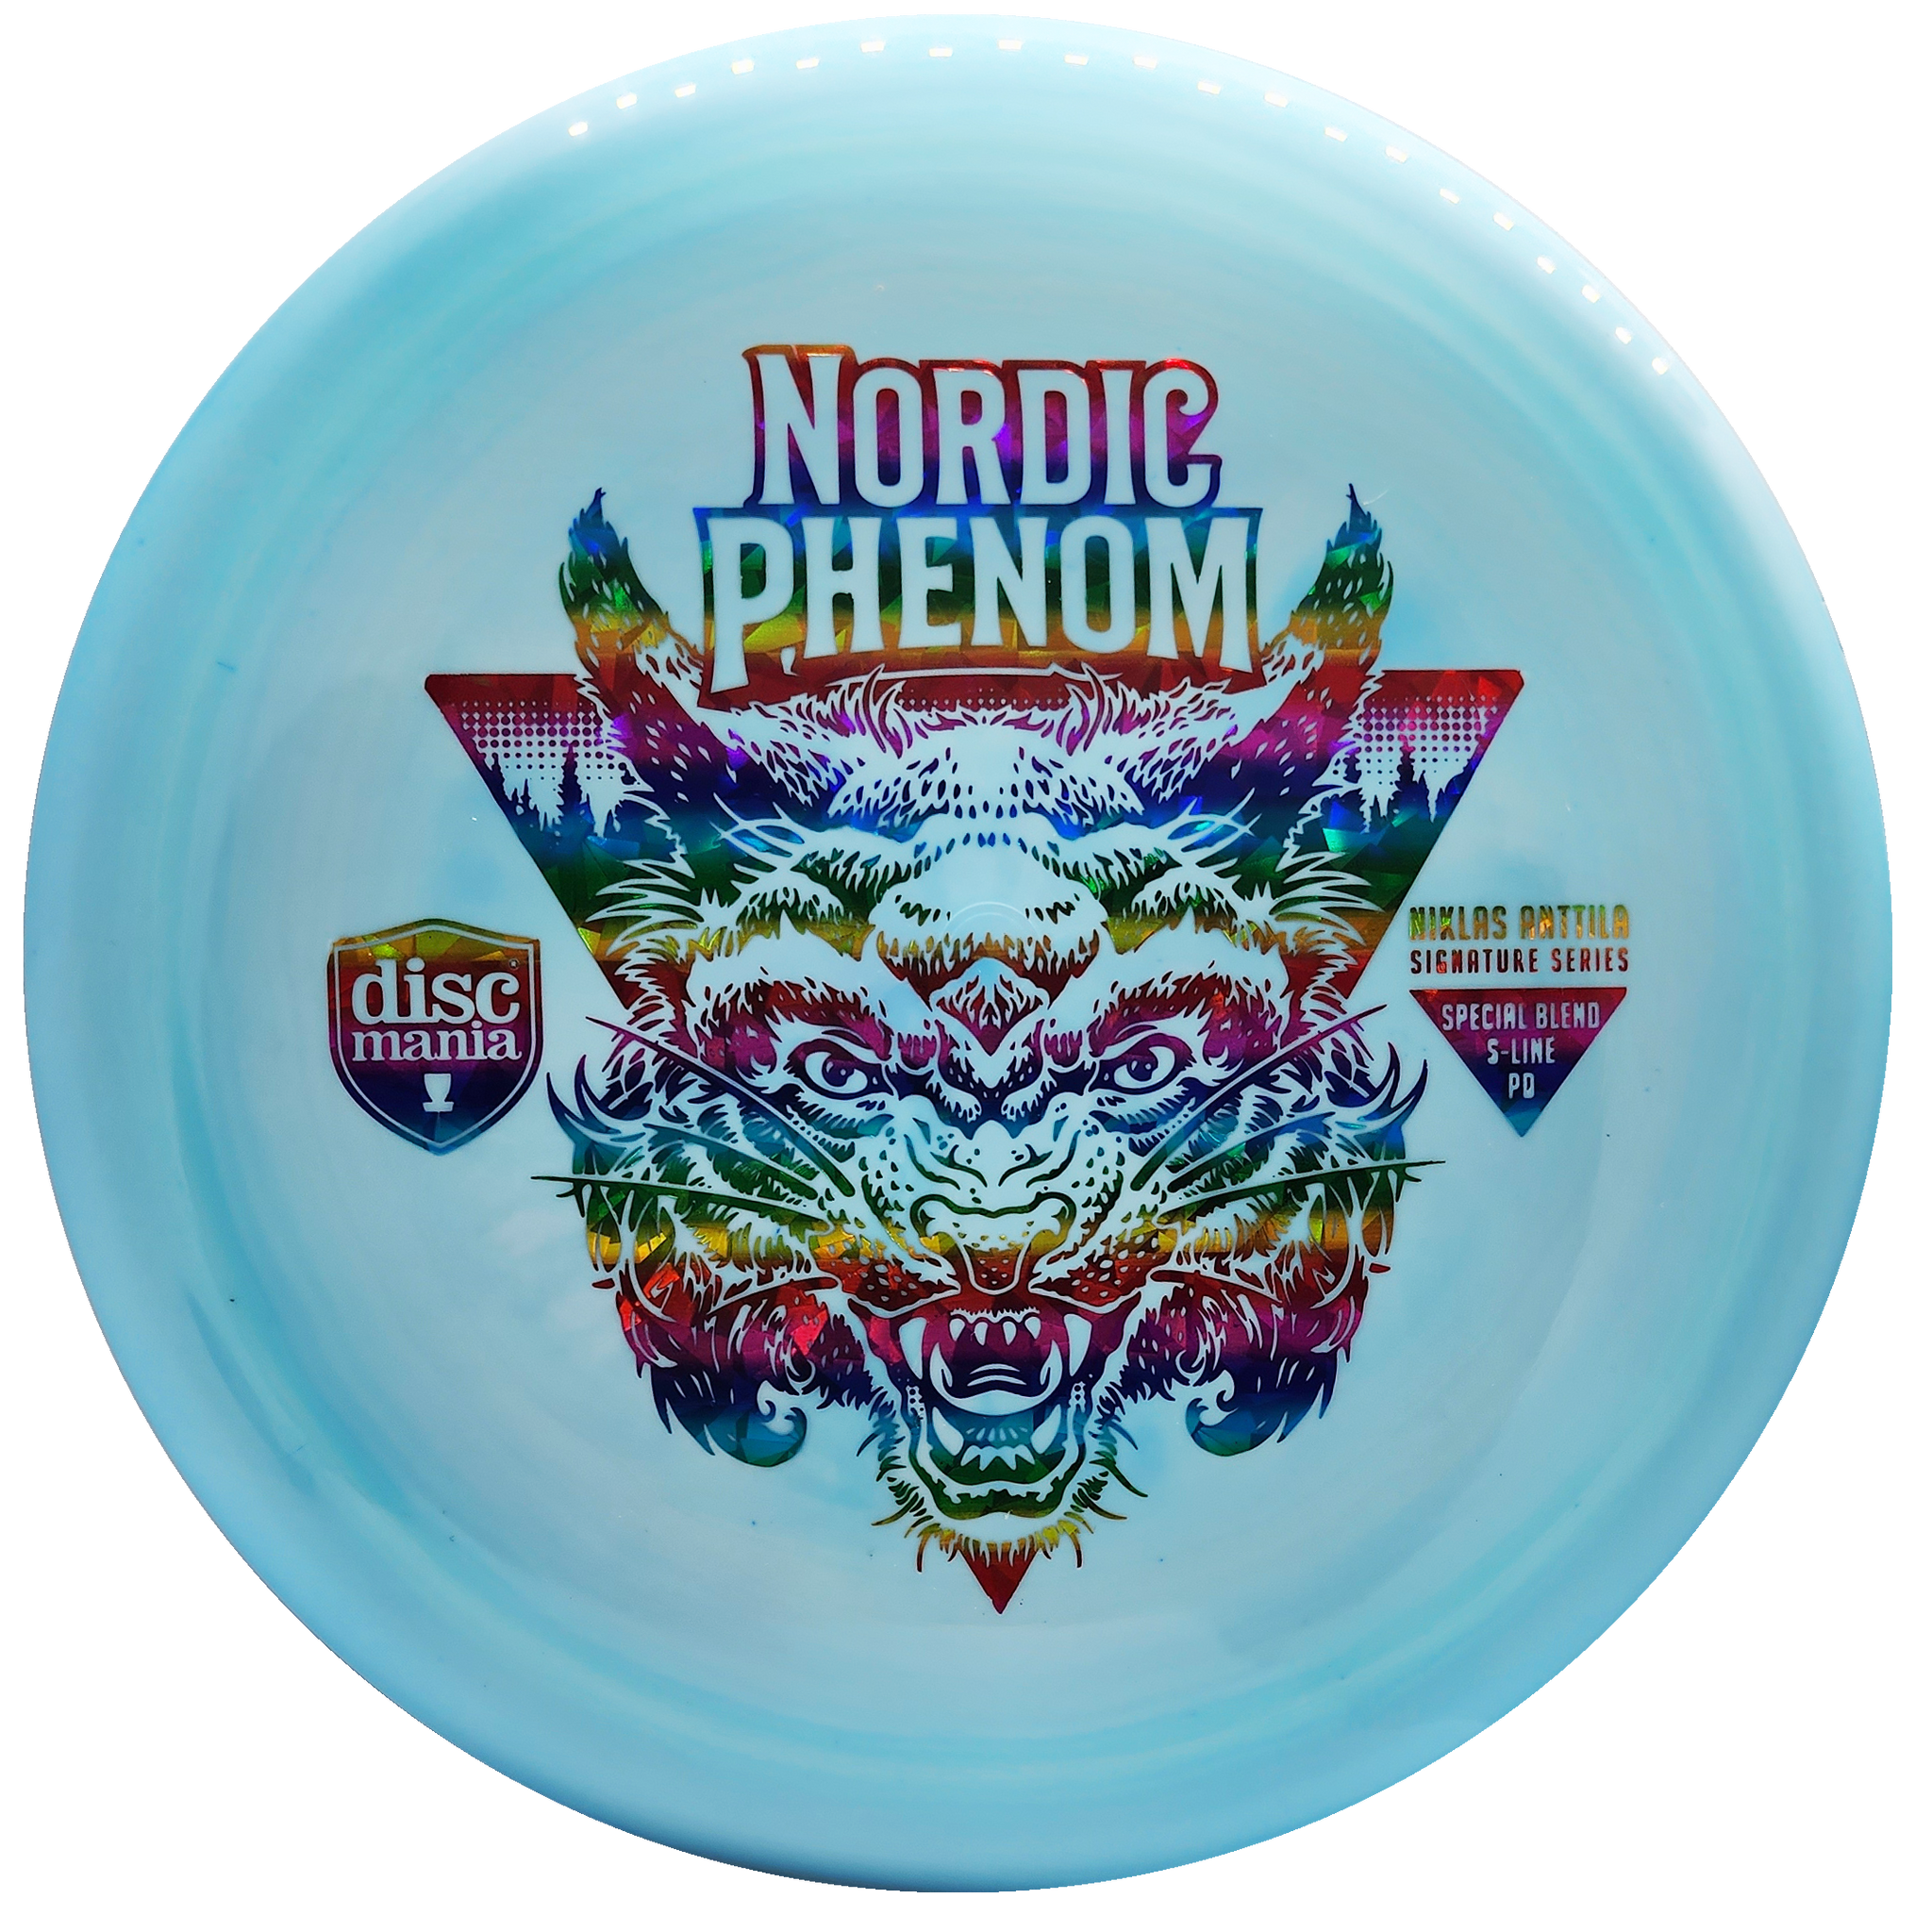 Discmania: Nordic Phenom - Niklas Anttila Signature Series - Special Blend - S-Line PD Signature - Turquoise/Rainbow